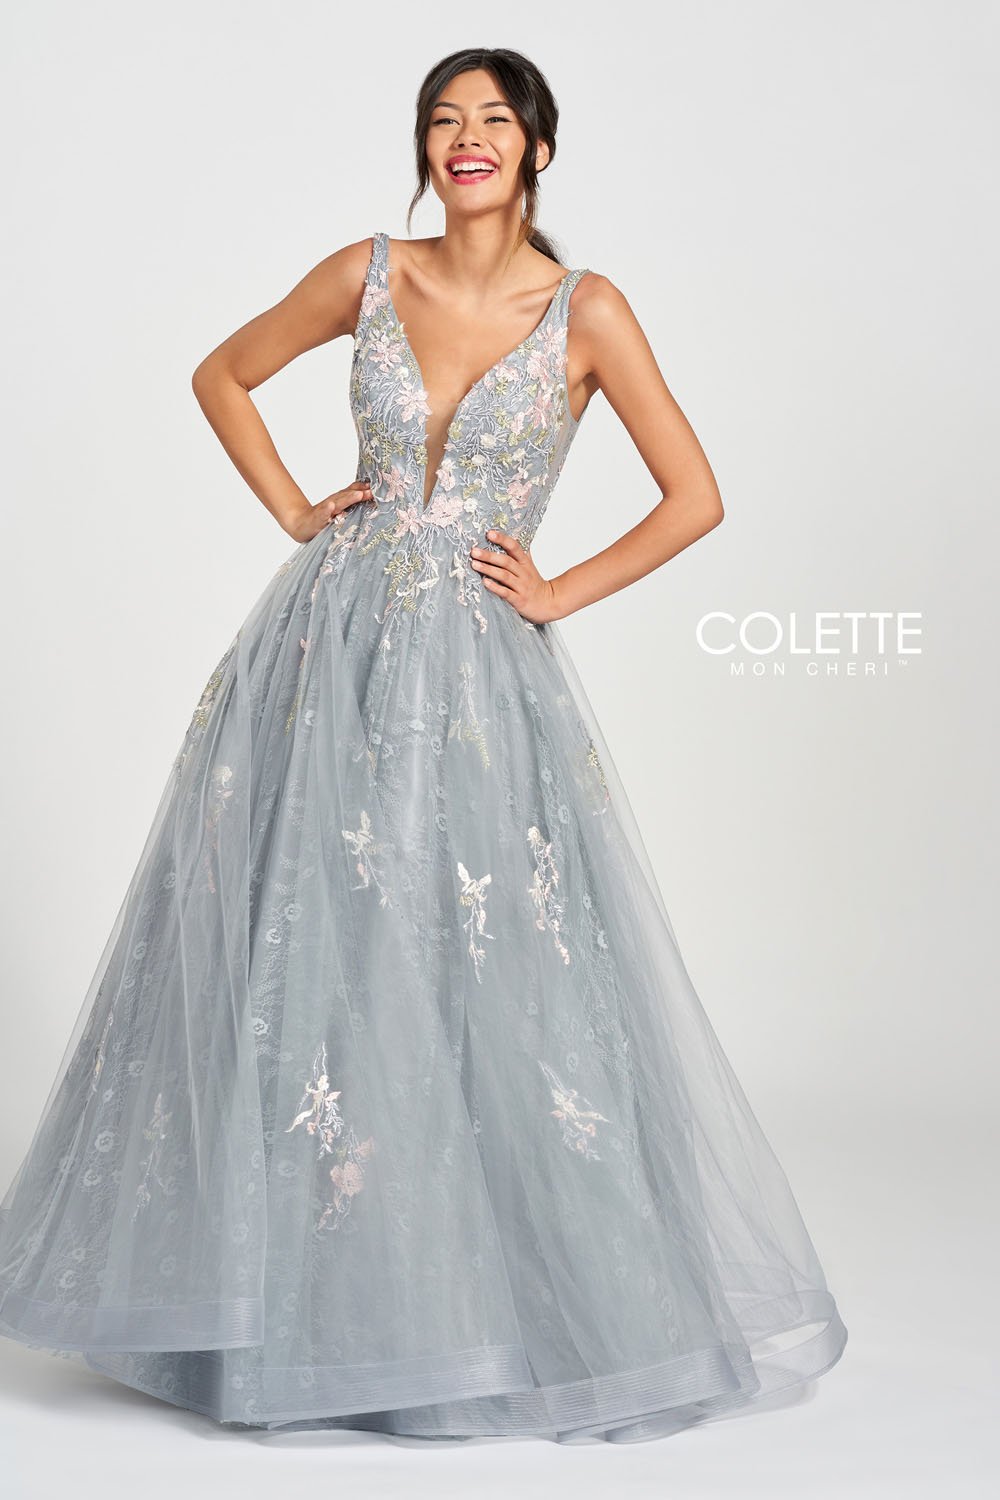 Colette CL12213 Platinum Multi prom dresses.  Platinum Multi prom dresses image by Colette.